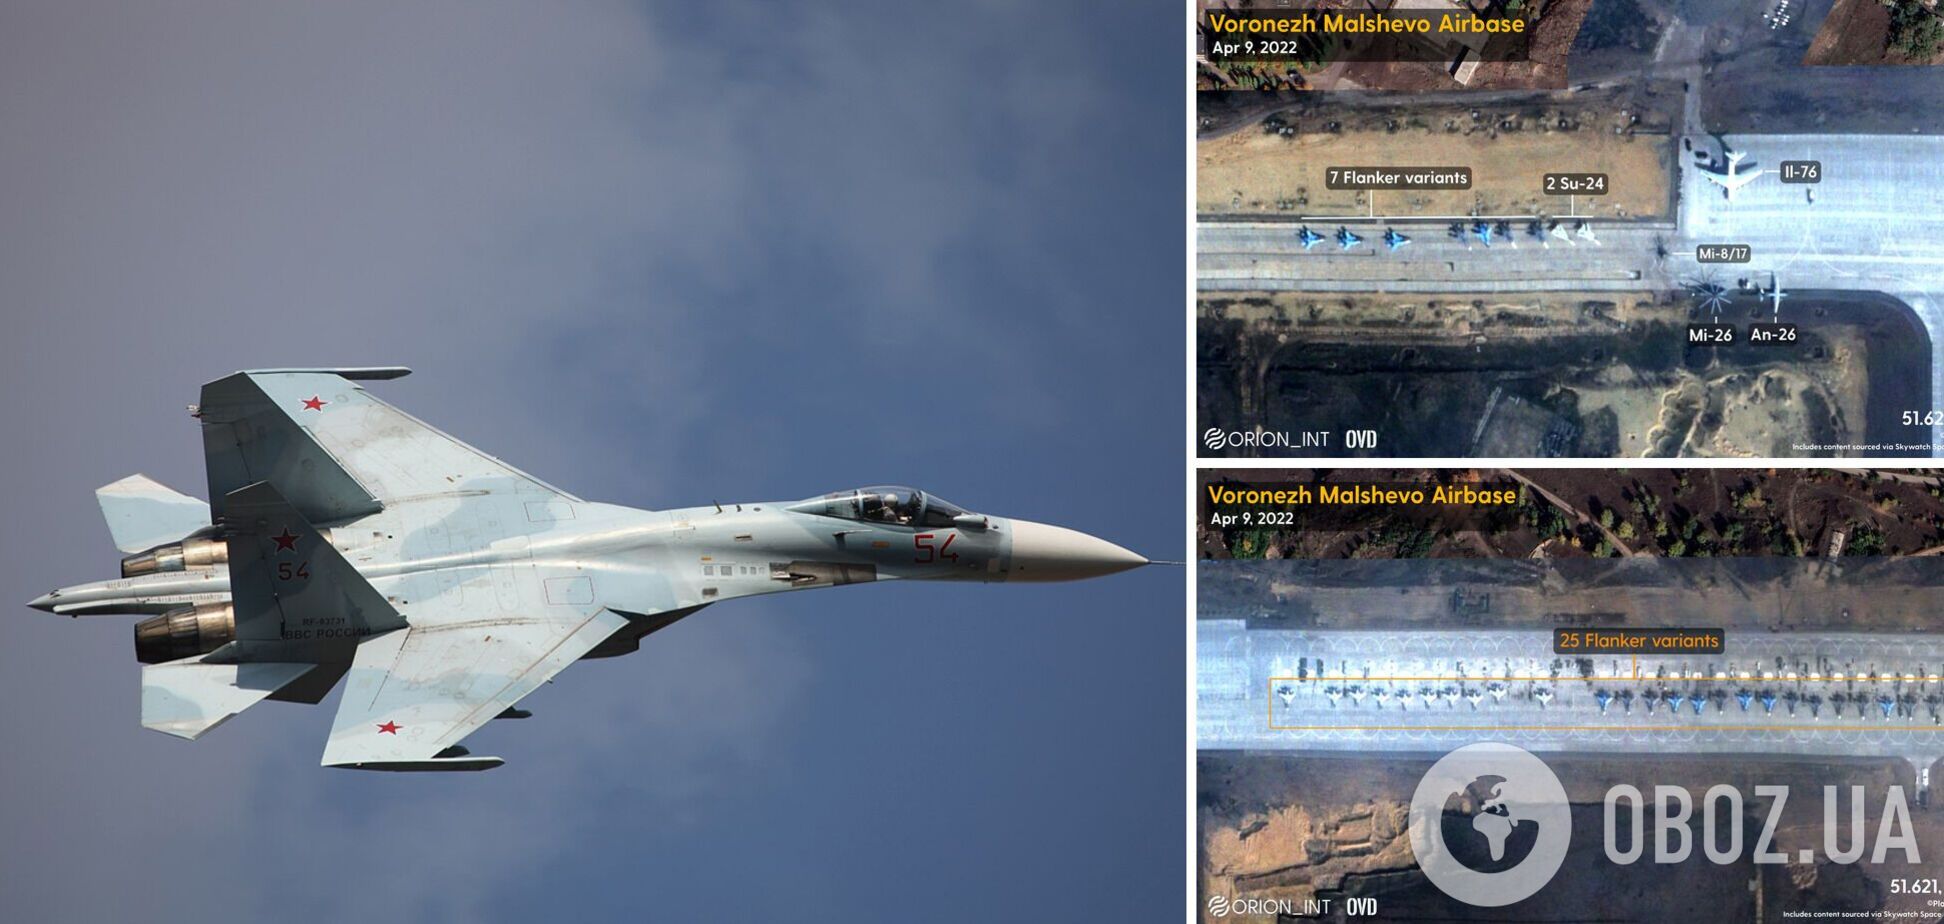 Росія стягнула на аеродром у Воронежі десятки винищувачів і техніку: опубліковано фото